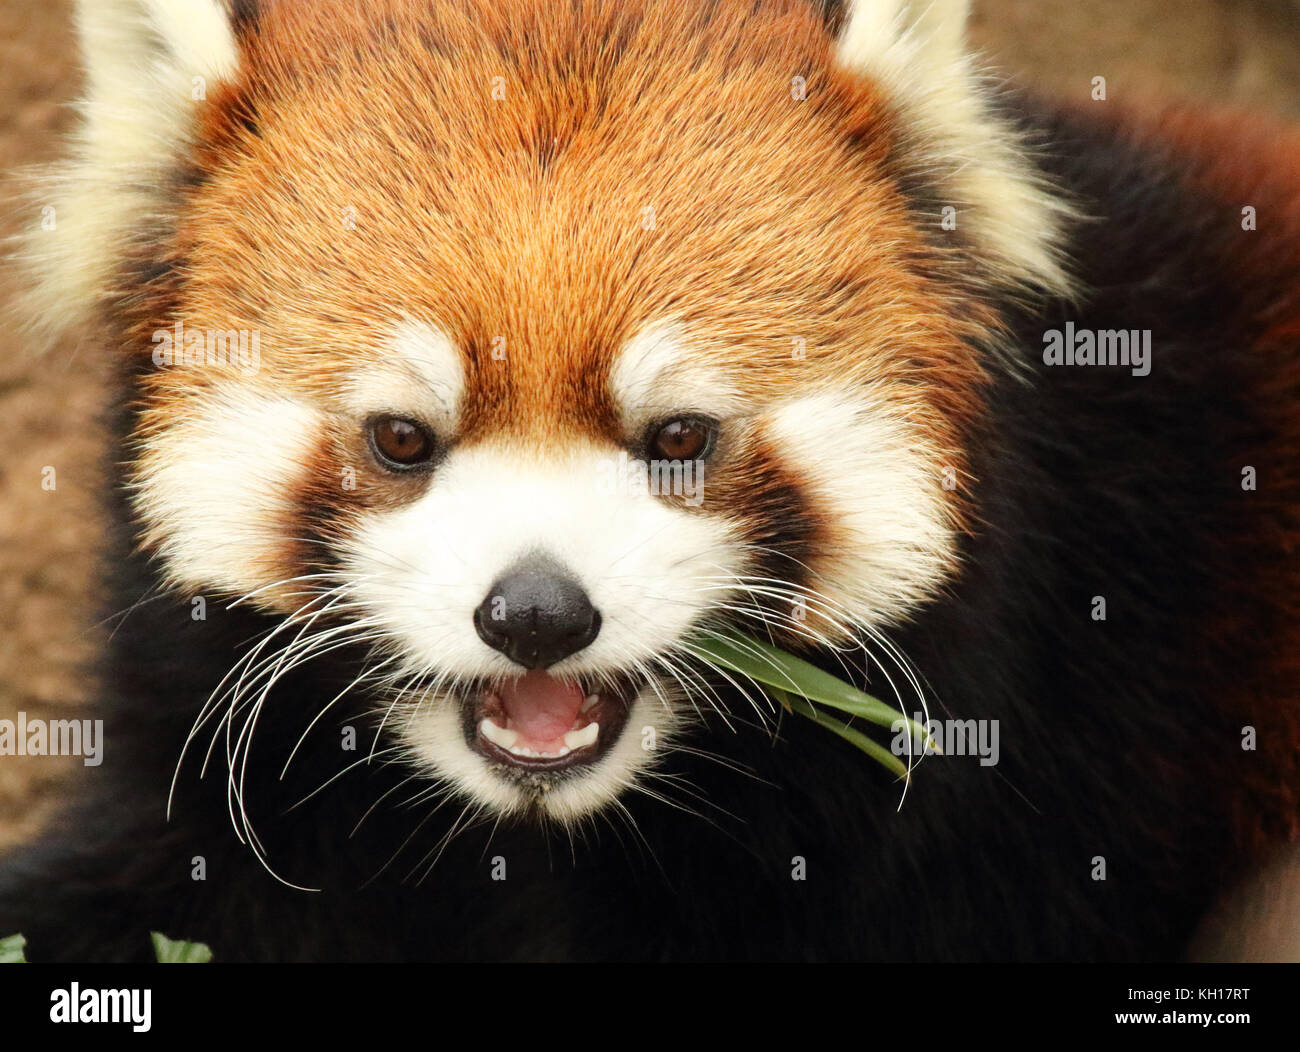 Un panda rouge donnant un grognement sourd tandis que l'alimentation. Banque D'Images